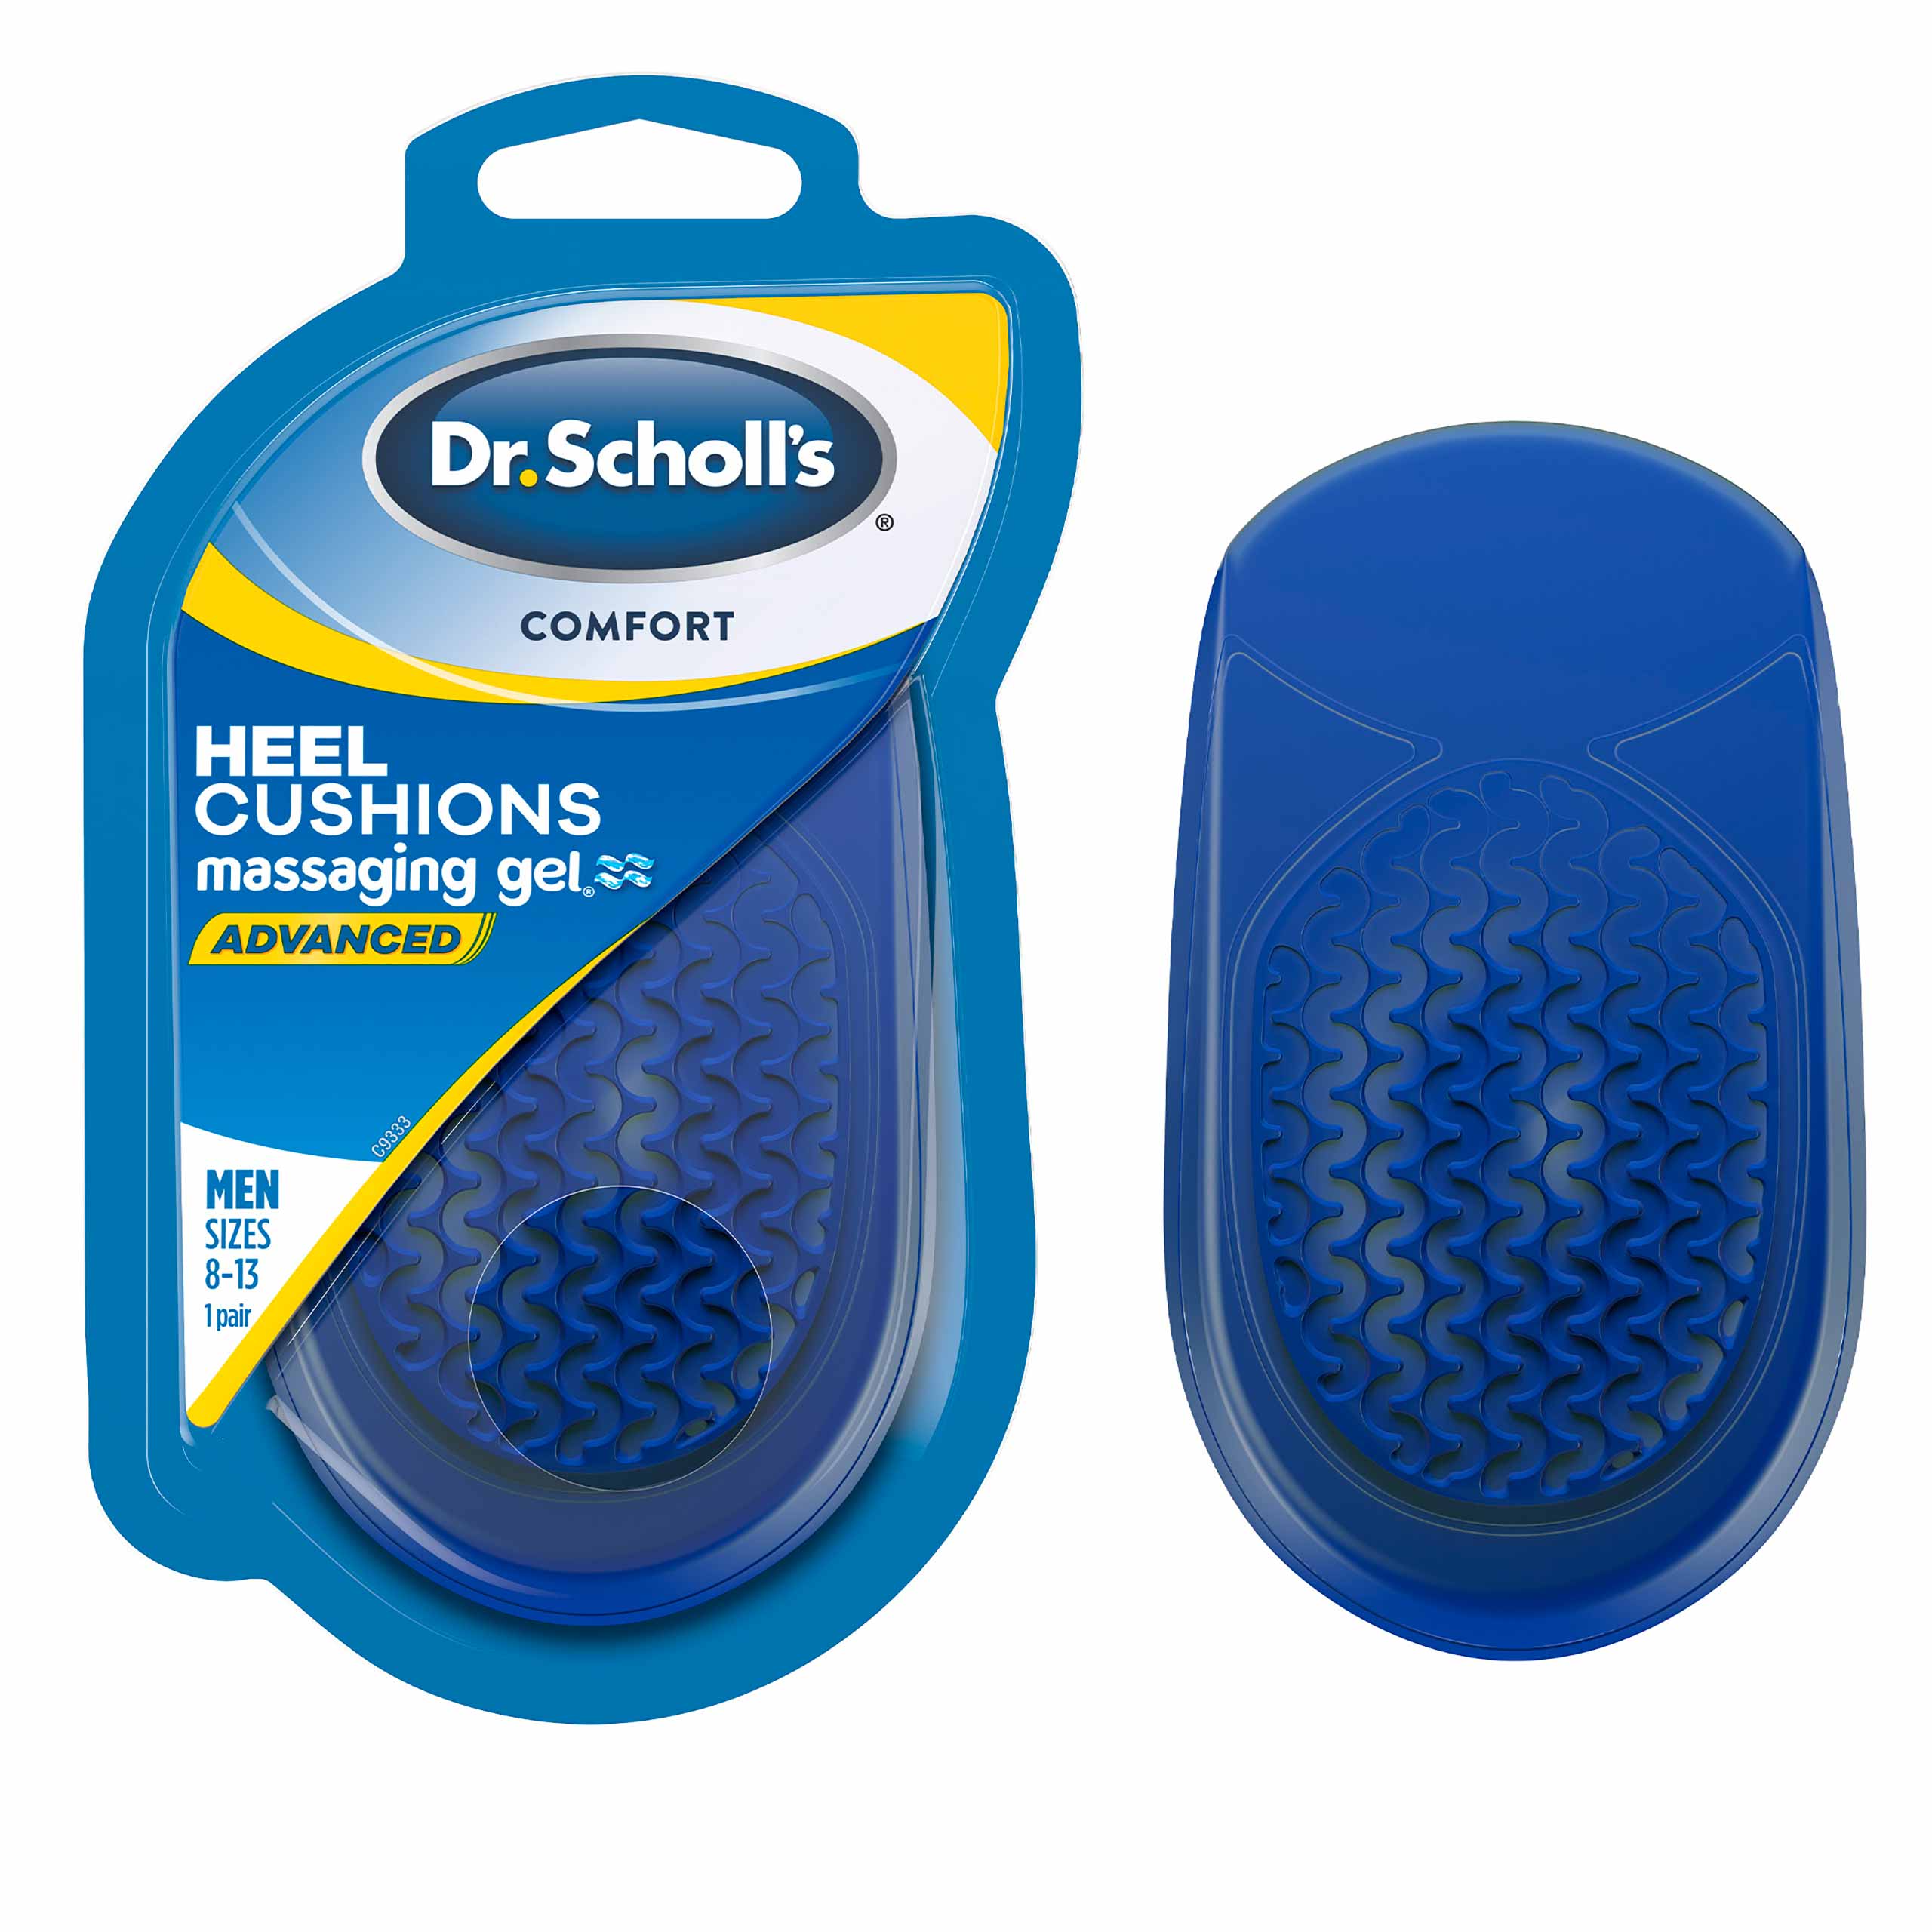 Dr. Scholl’s Comfort Heel Cushions